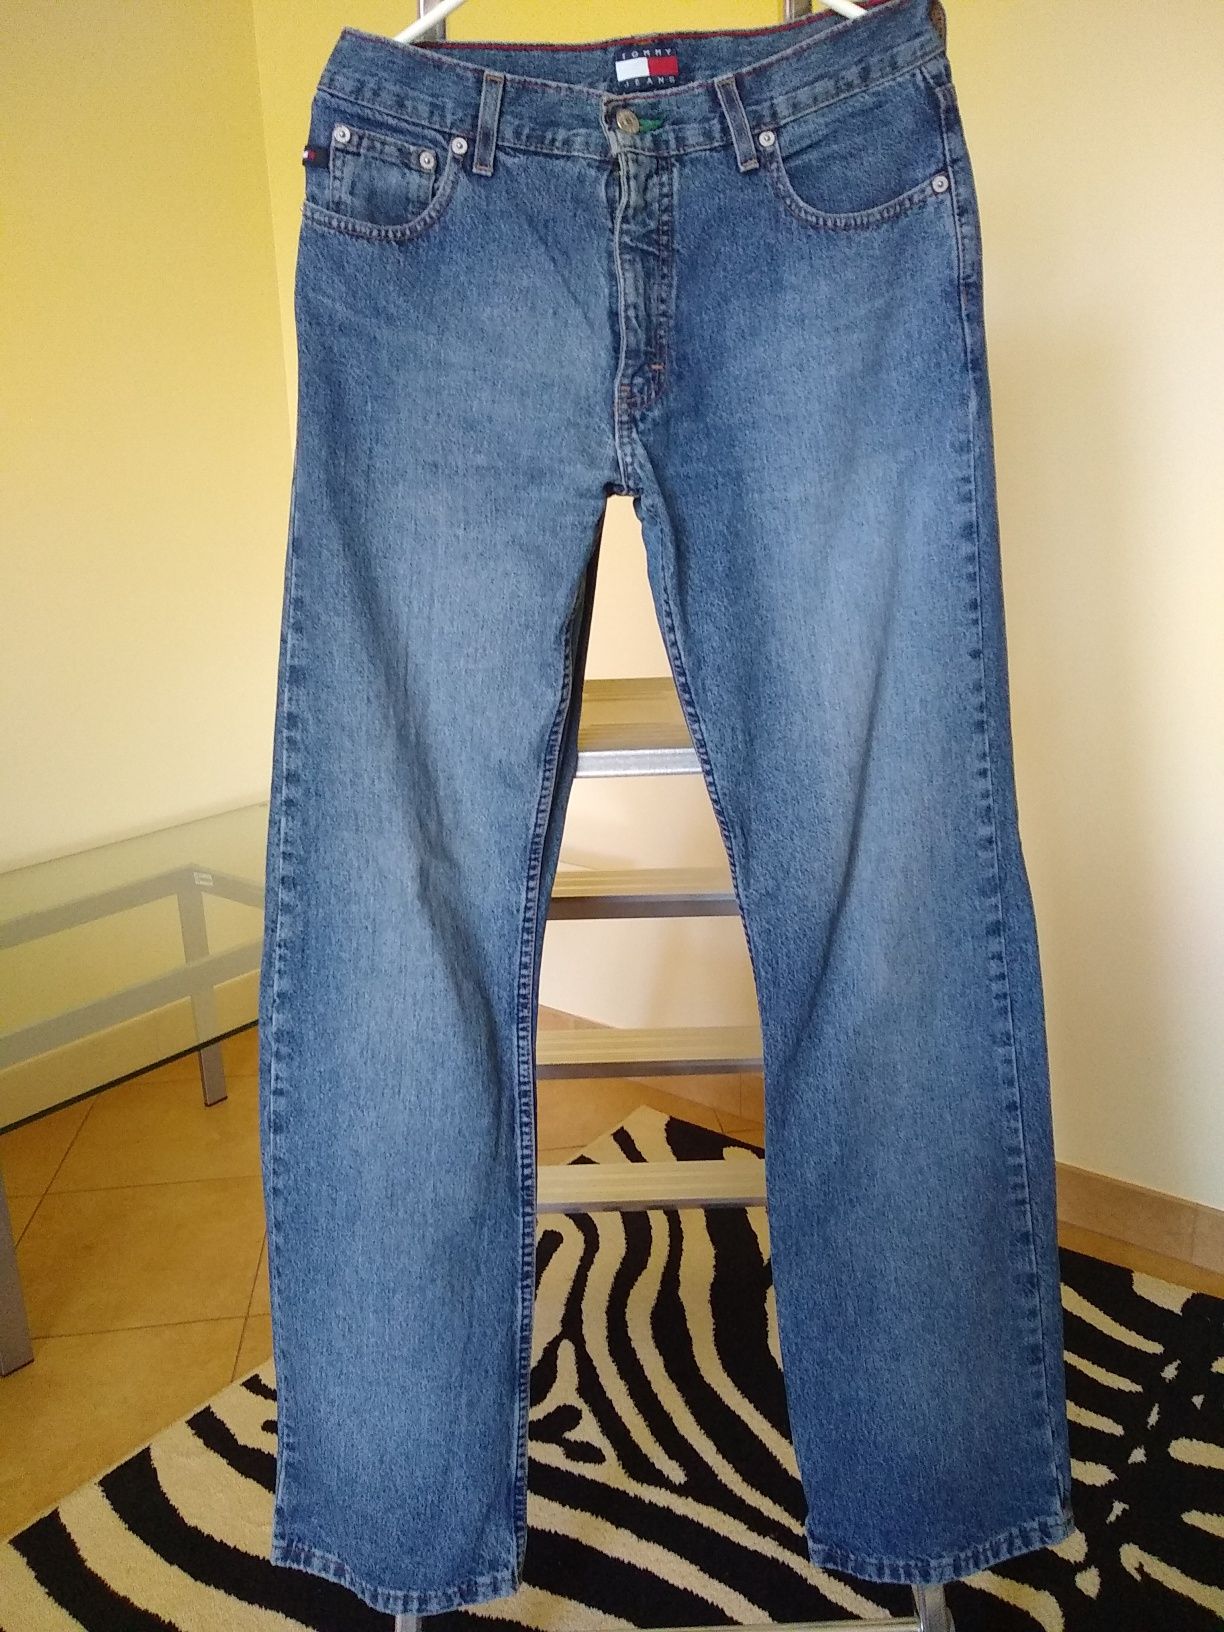 Tommy Hilfiger jeansy, Rozmiar w pasie ok. 78 cm, 31 cali